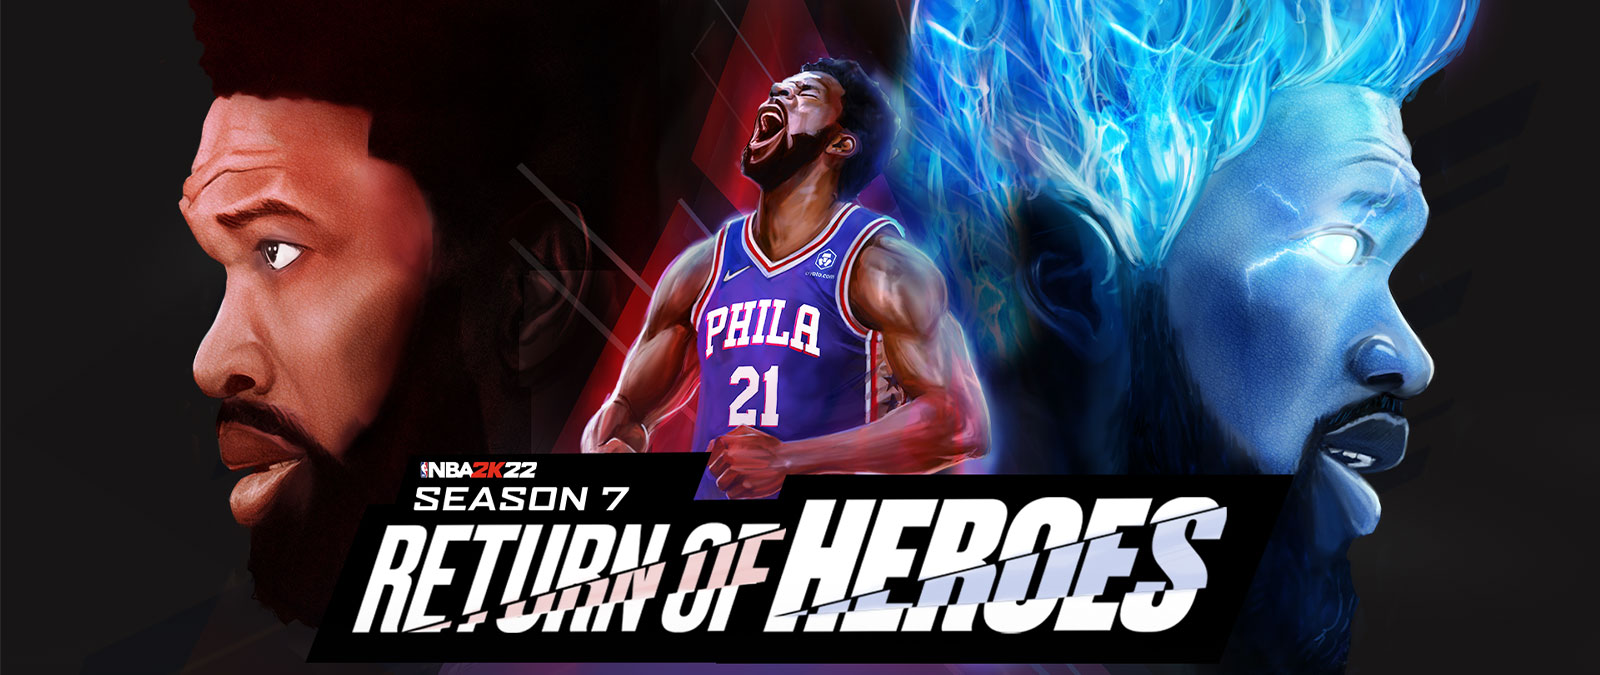 NBA 2K22, Season 7, Return of Heroes, Philadelphian pelaaja huutaa kohti taivasta ja hehkuu voimaa sinisin liekein.